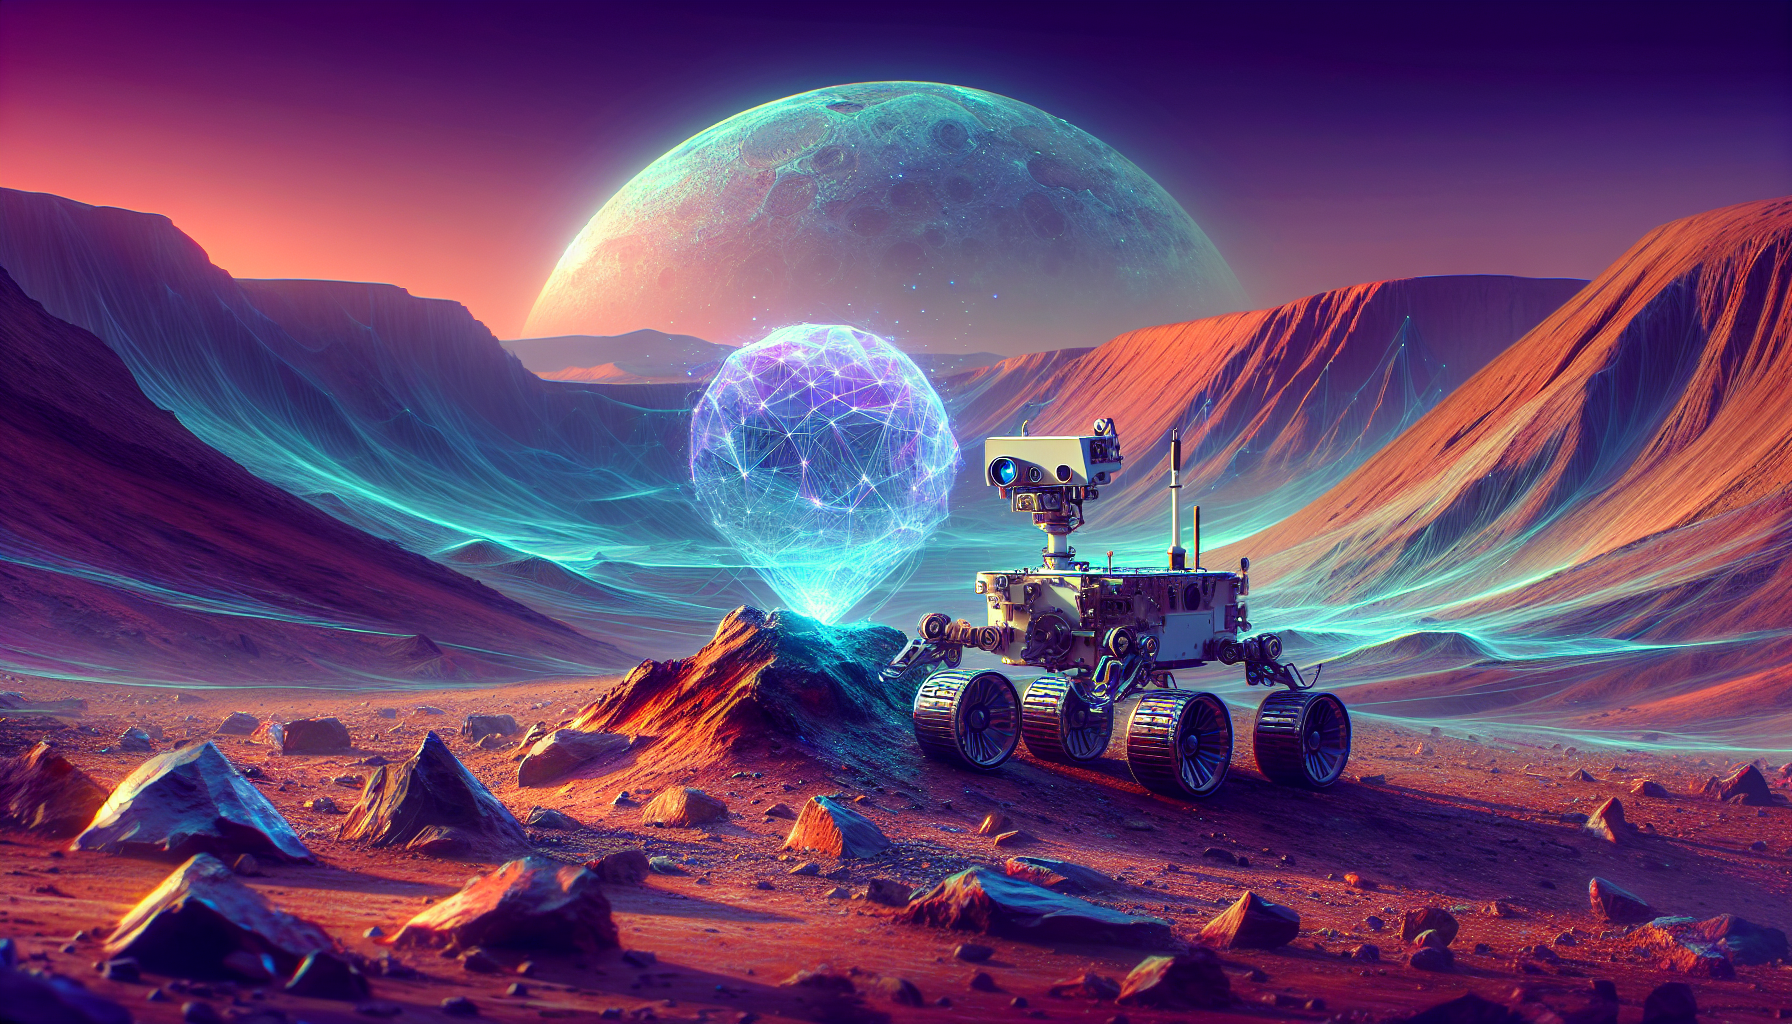 Cómo NASA está utilizando inteligencia artificial en su rover para estudiar rocas marcianas